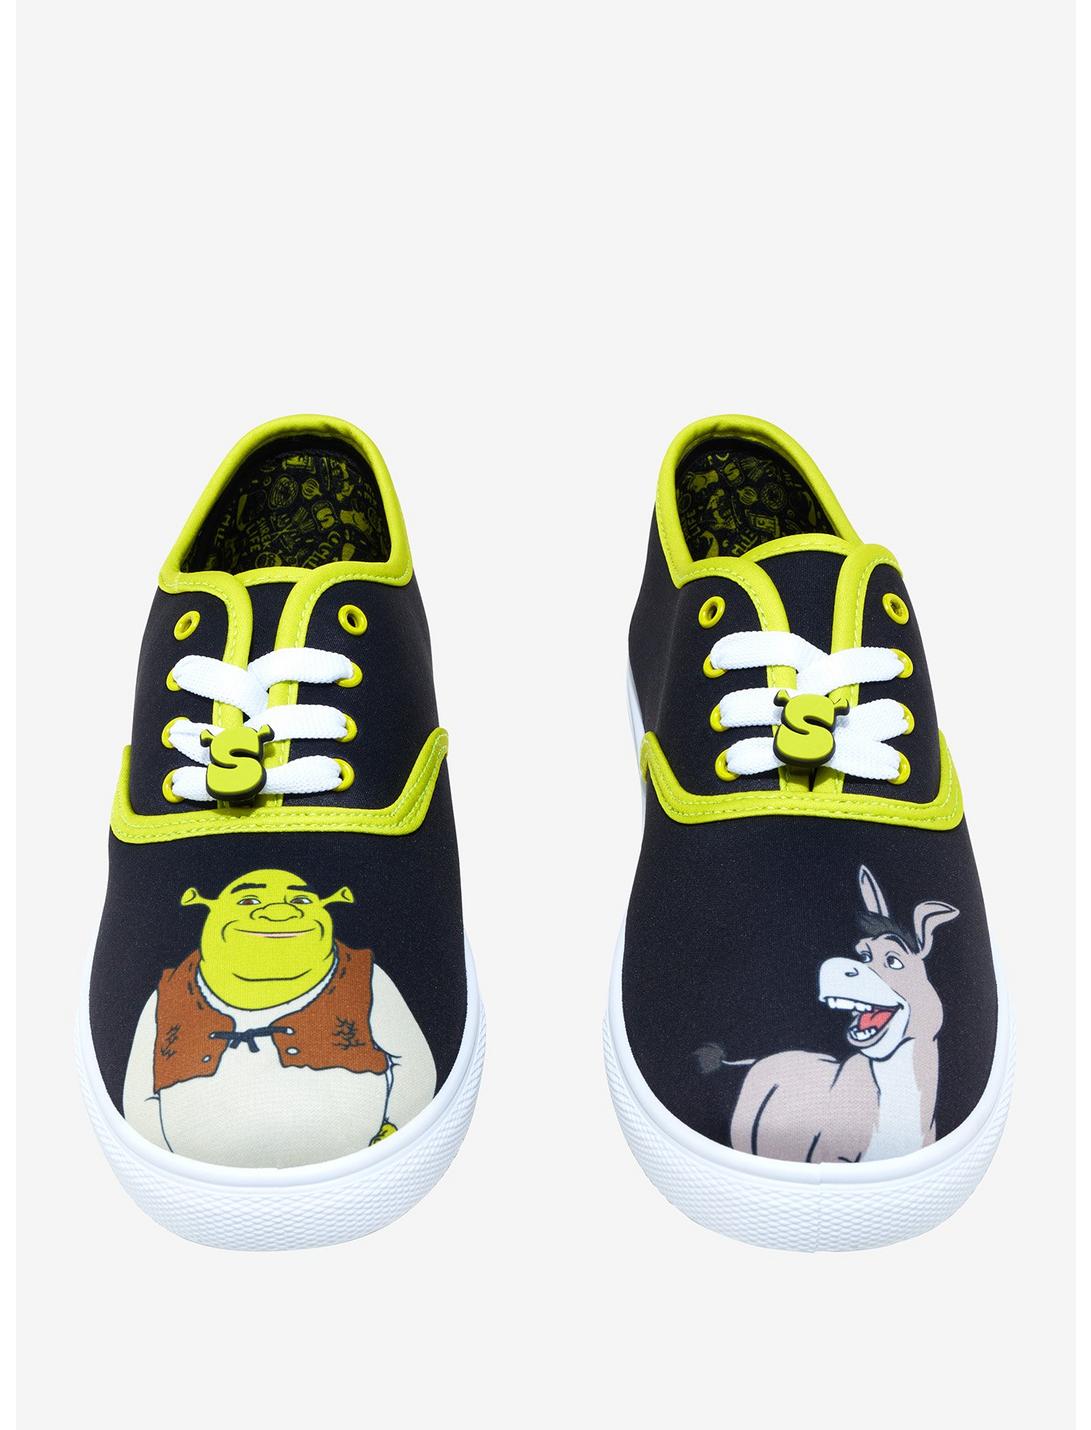 Shrek Donkey Bestie Sneakers, MULTI, hi-res